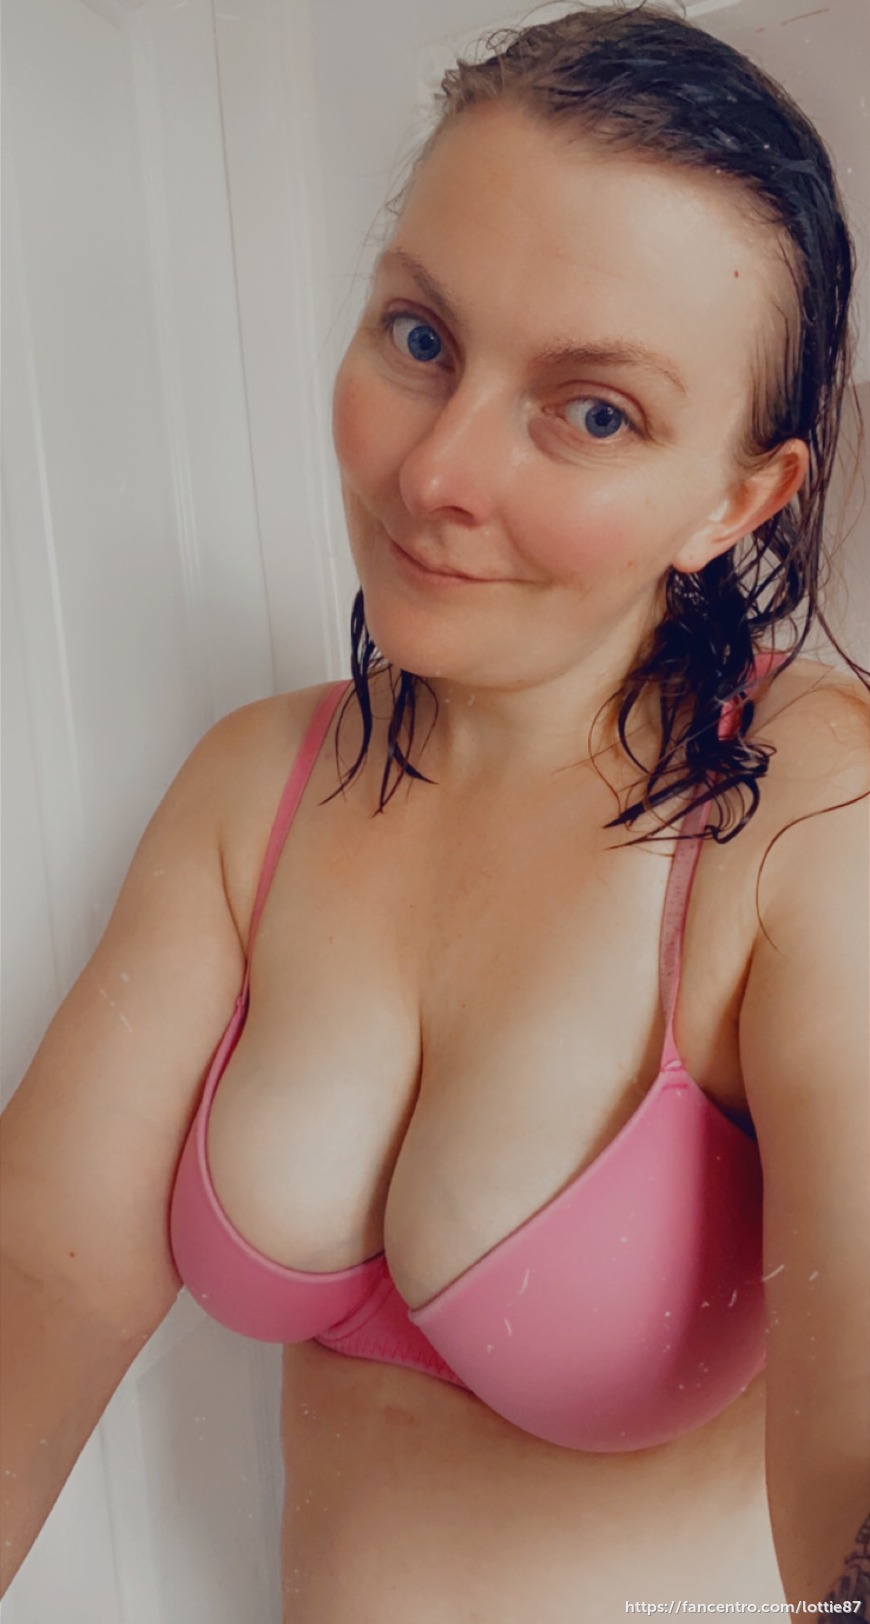 Selfie after a hot bath 1